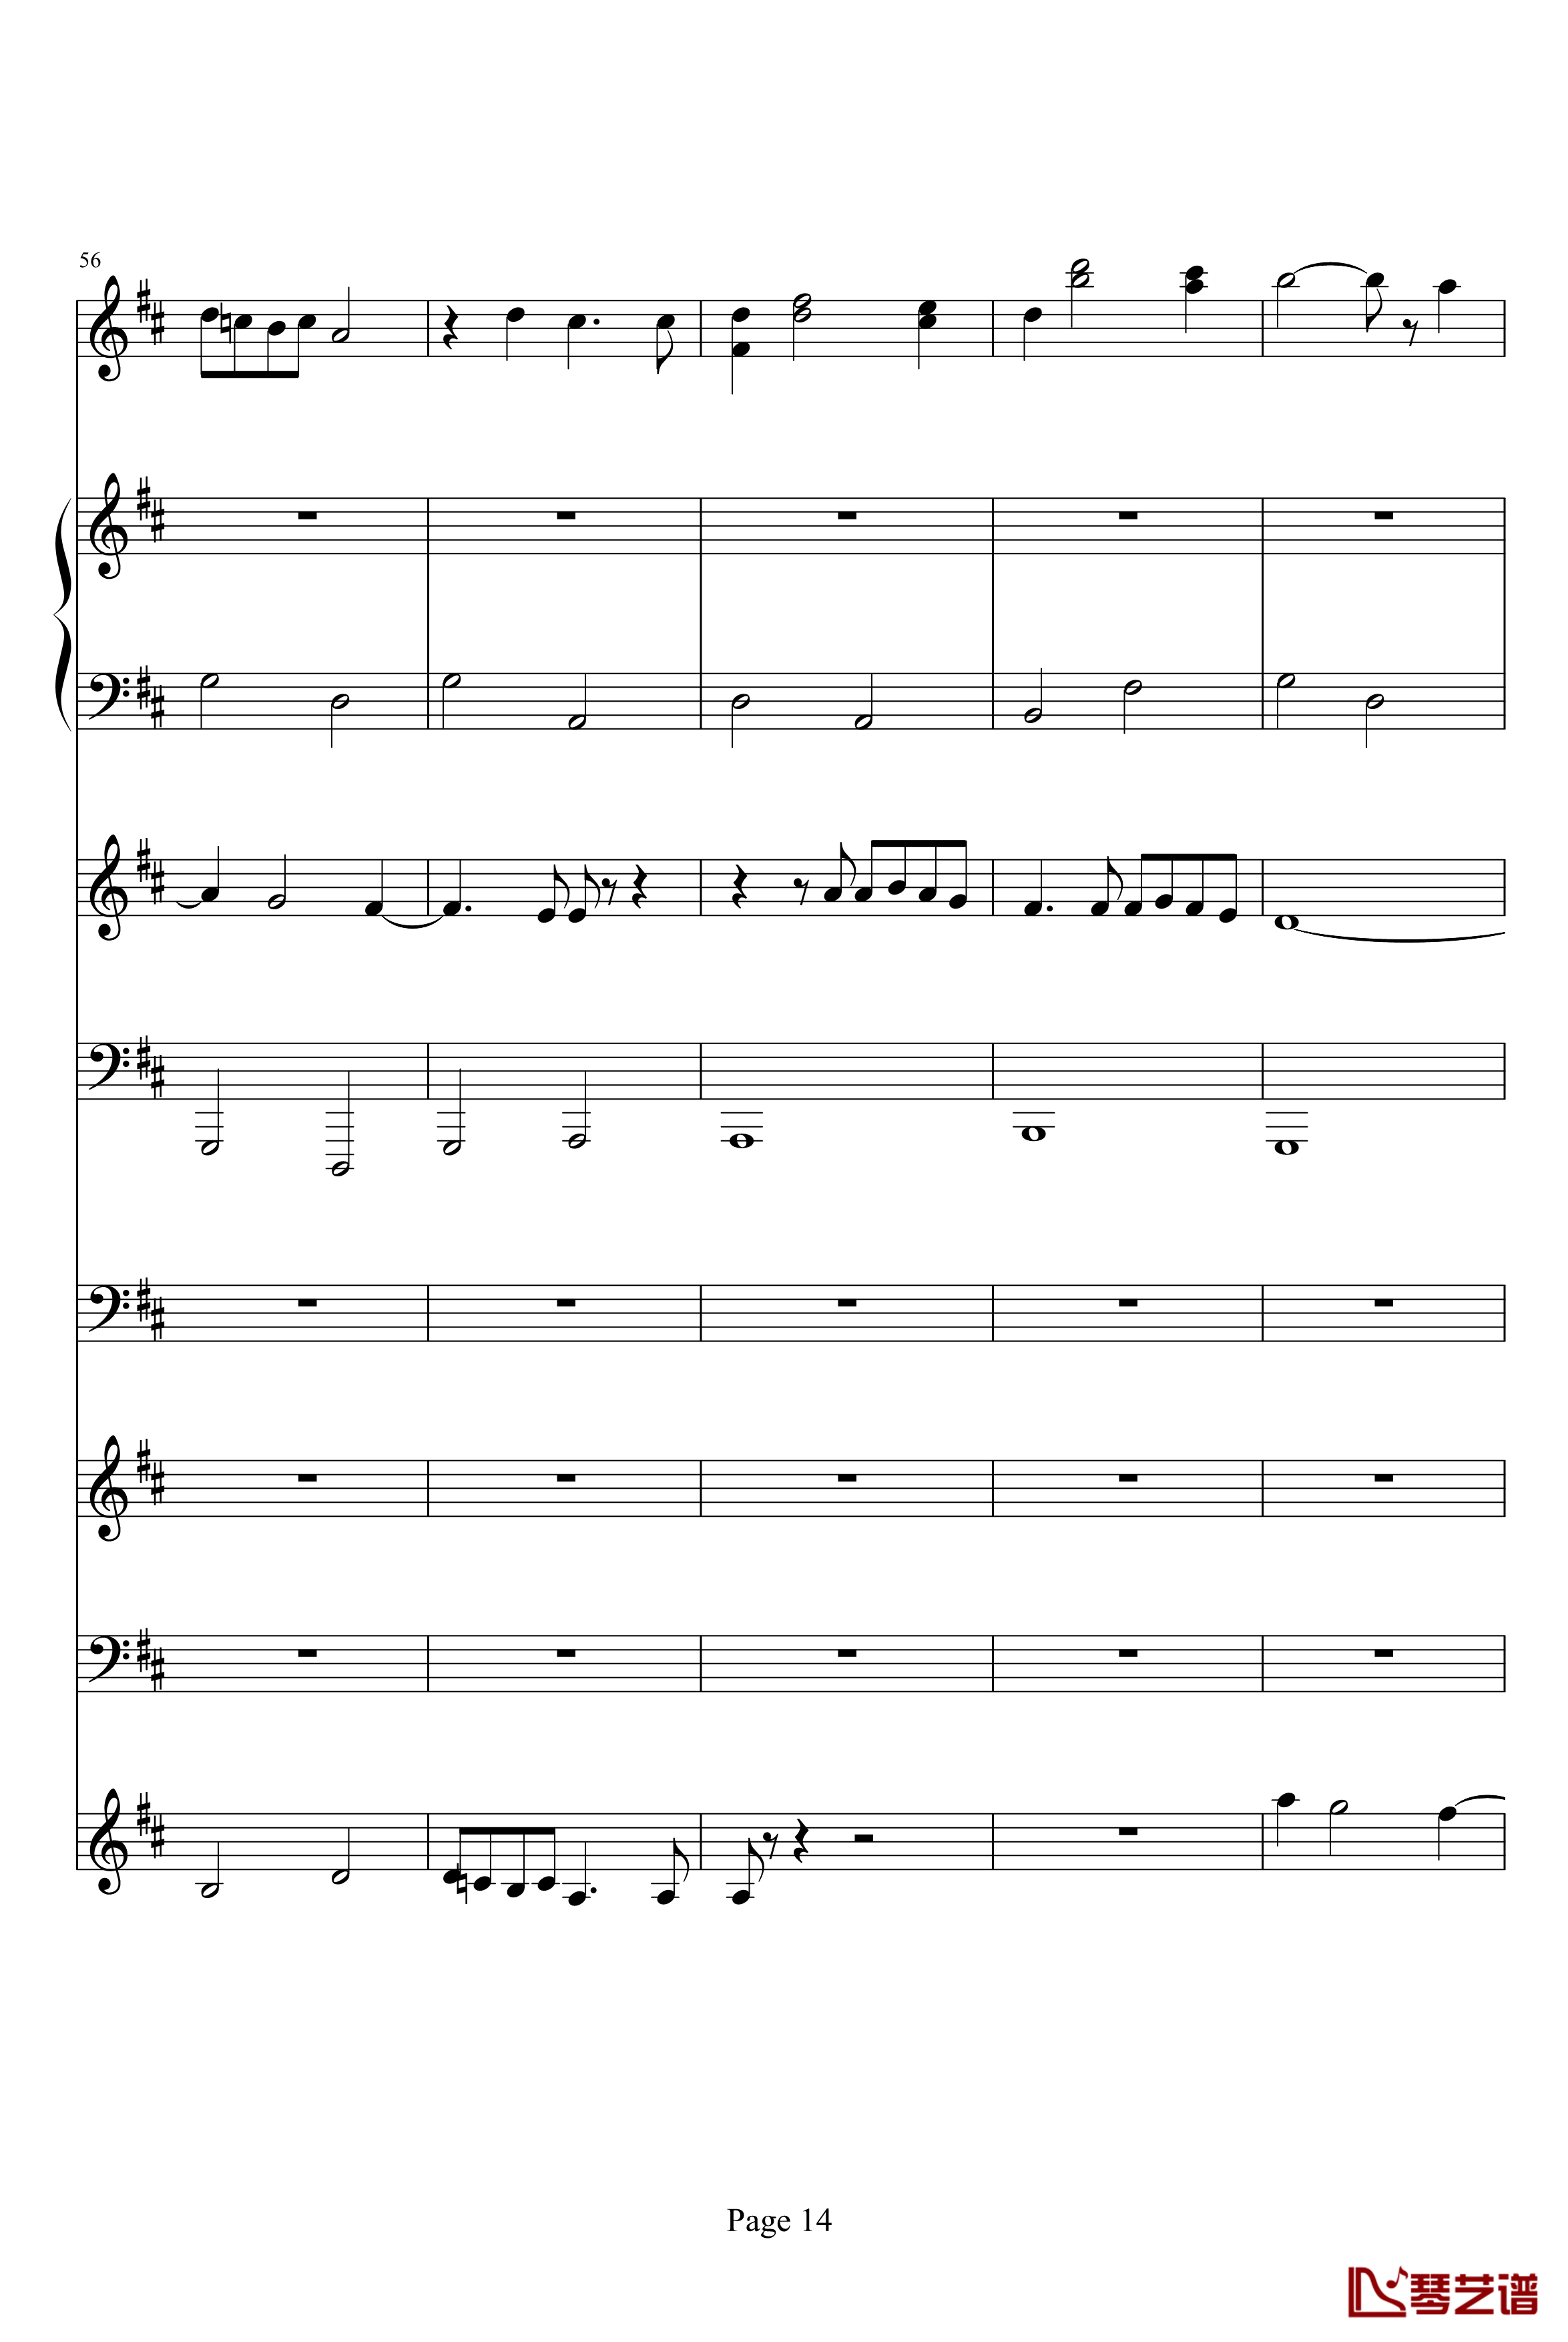 卡农钢琴谱-乐队总谱版-帕赫贝尔-Pachelbel14